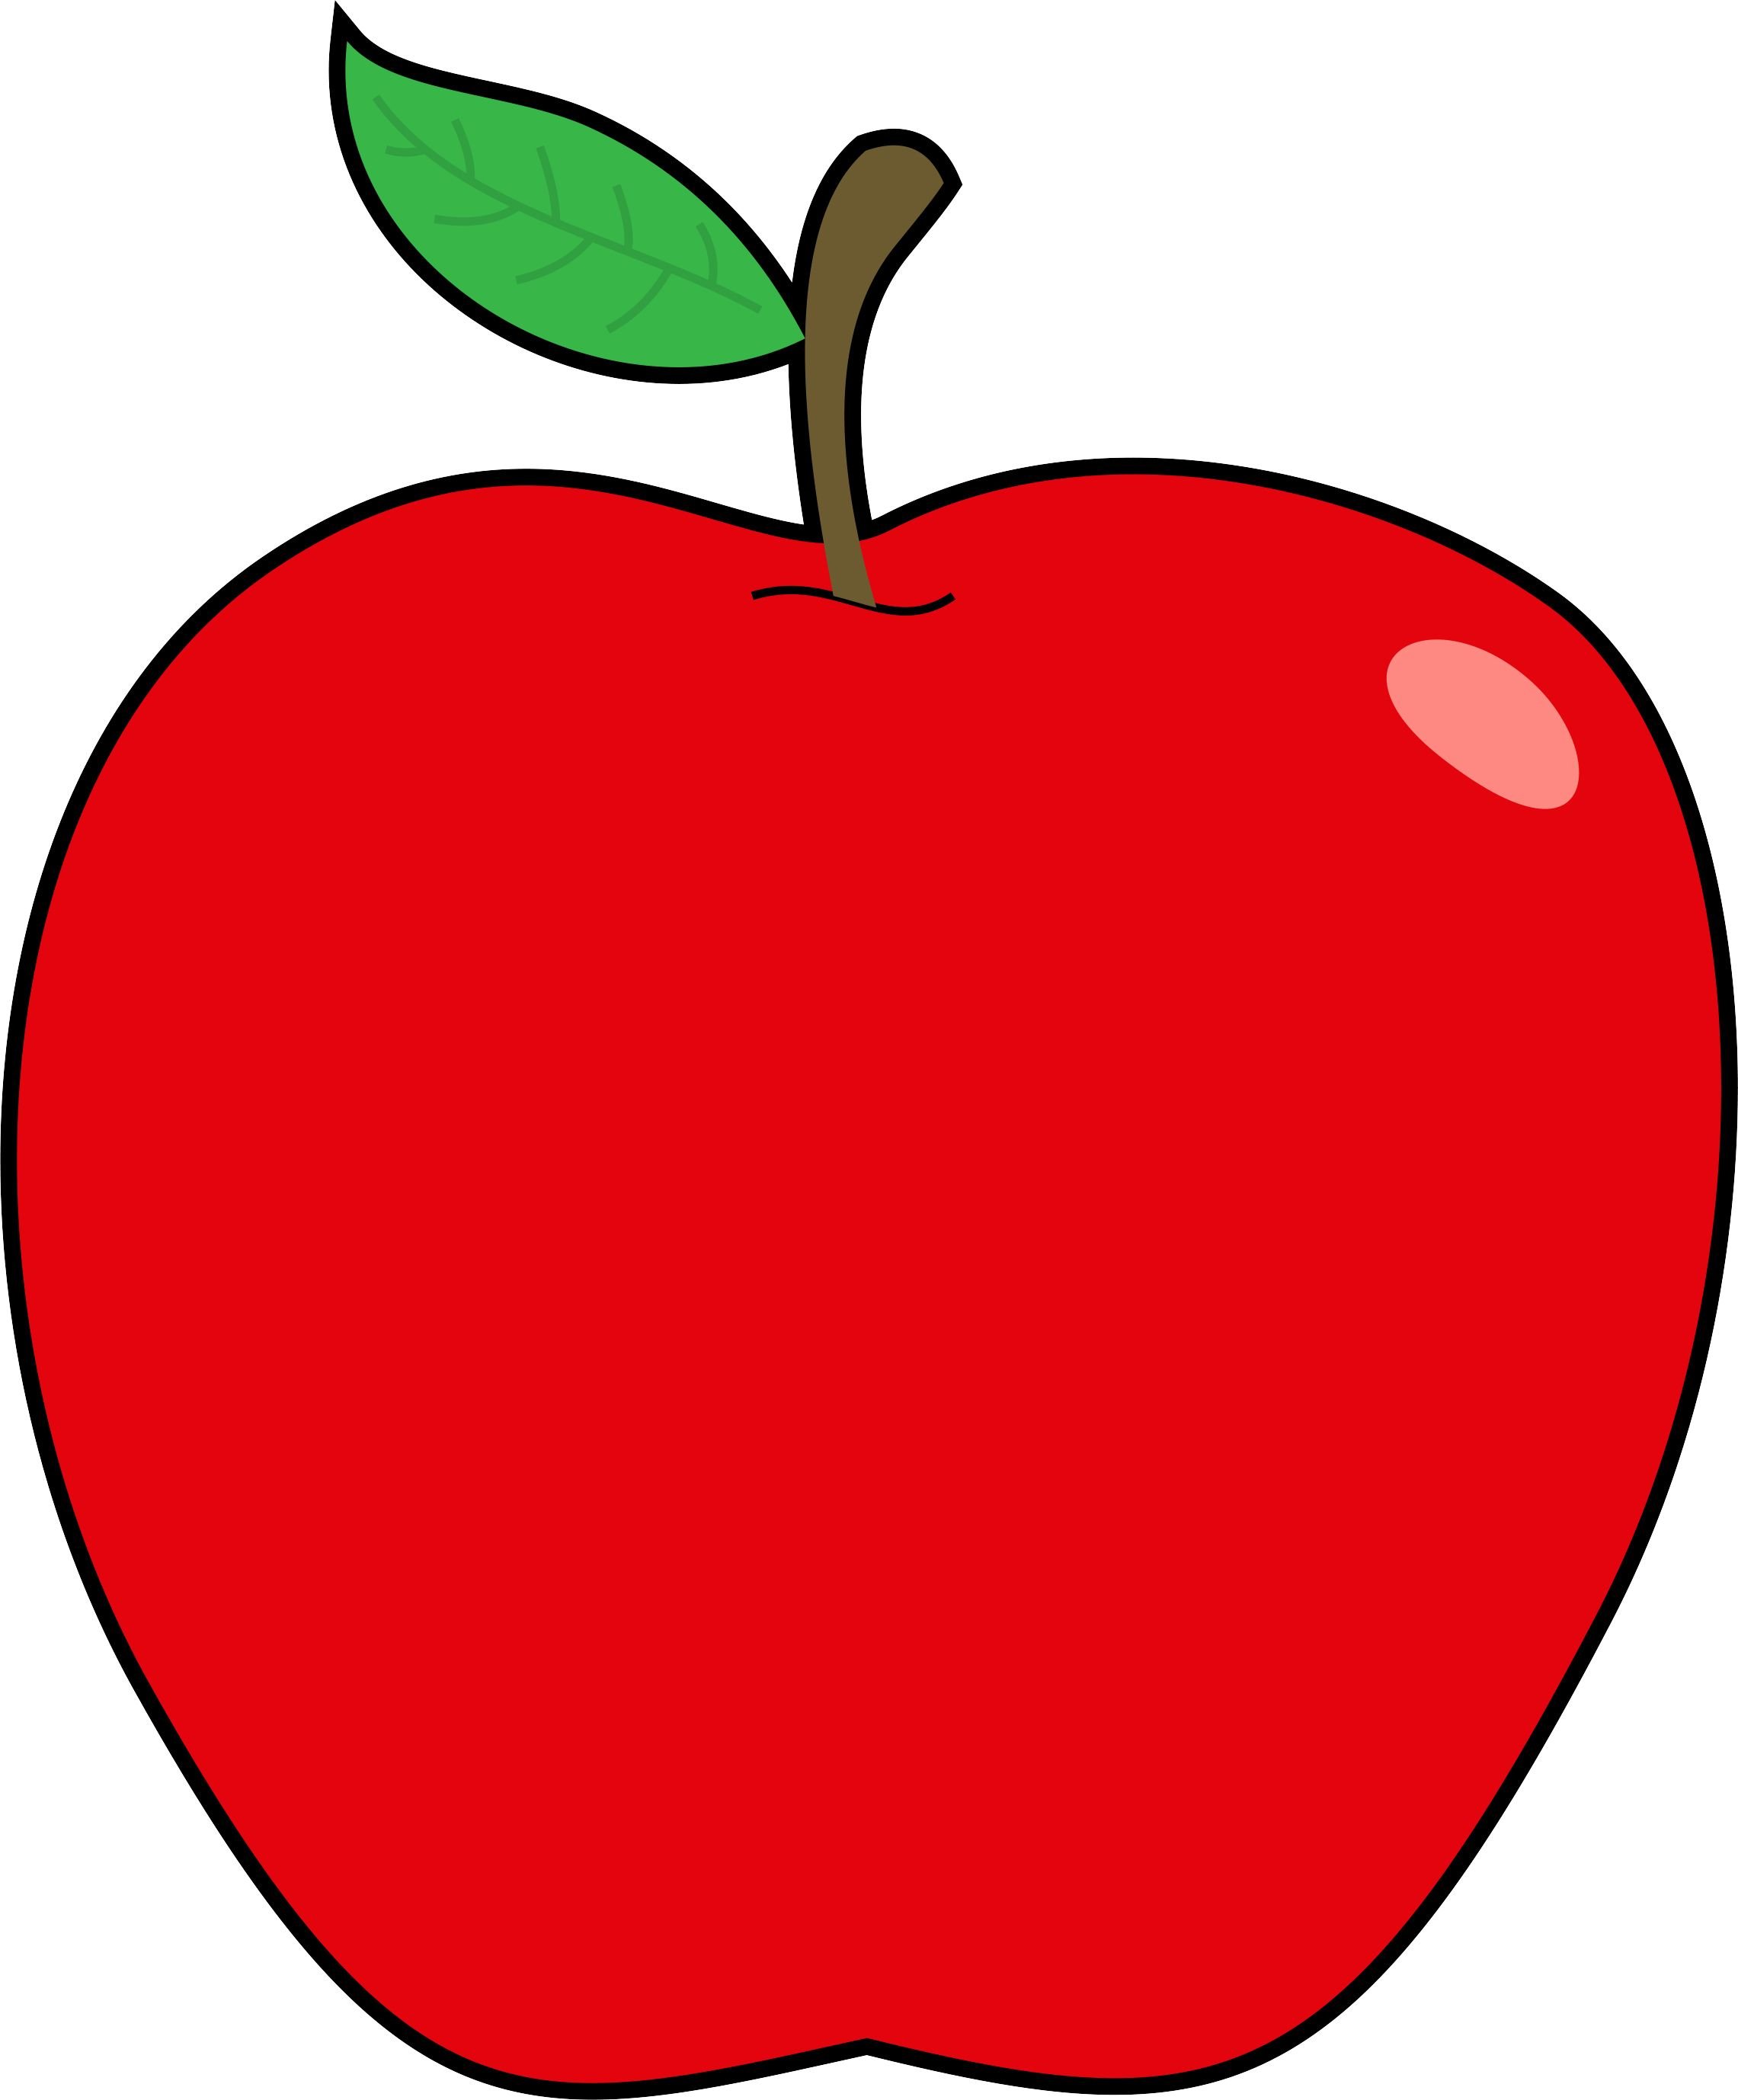 Раздаточный материал яблоки